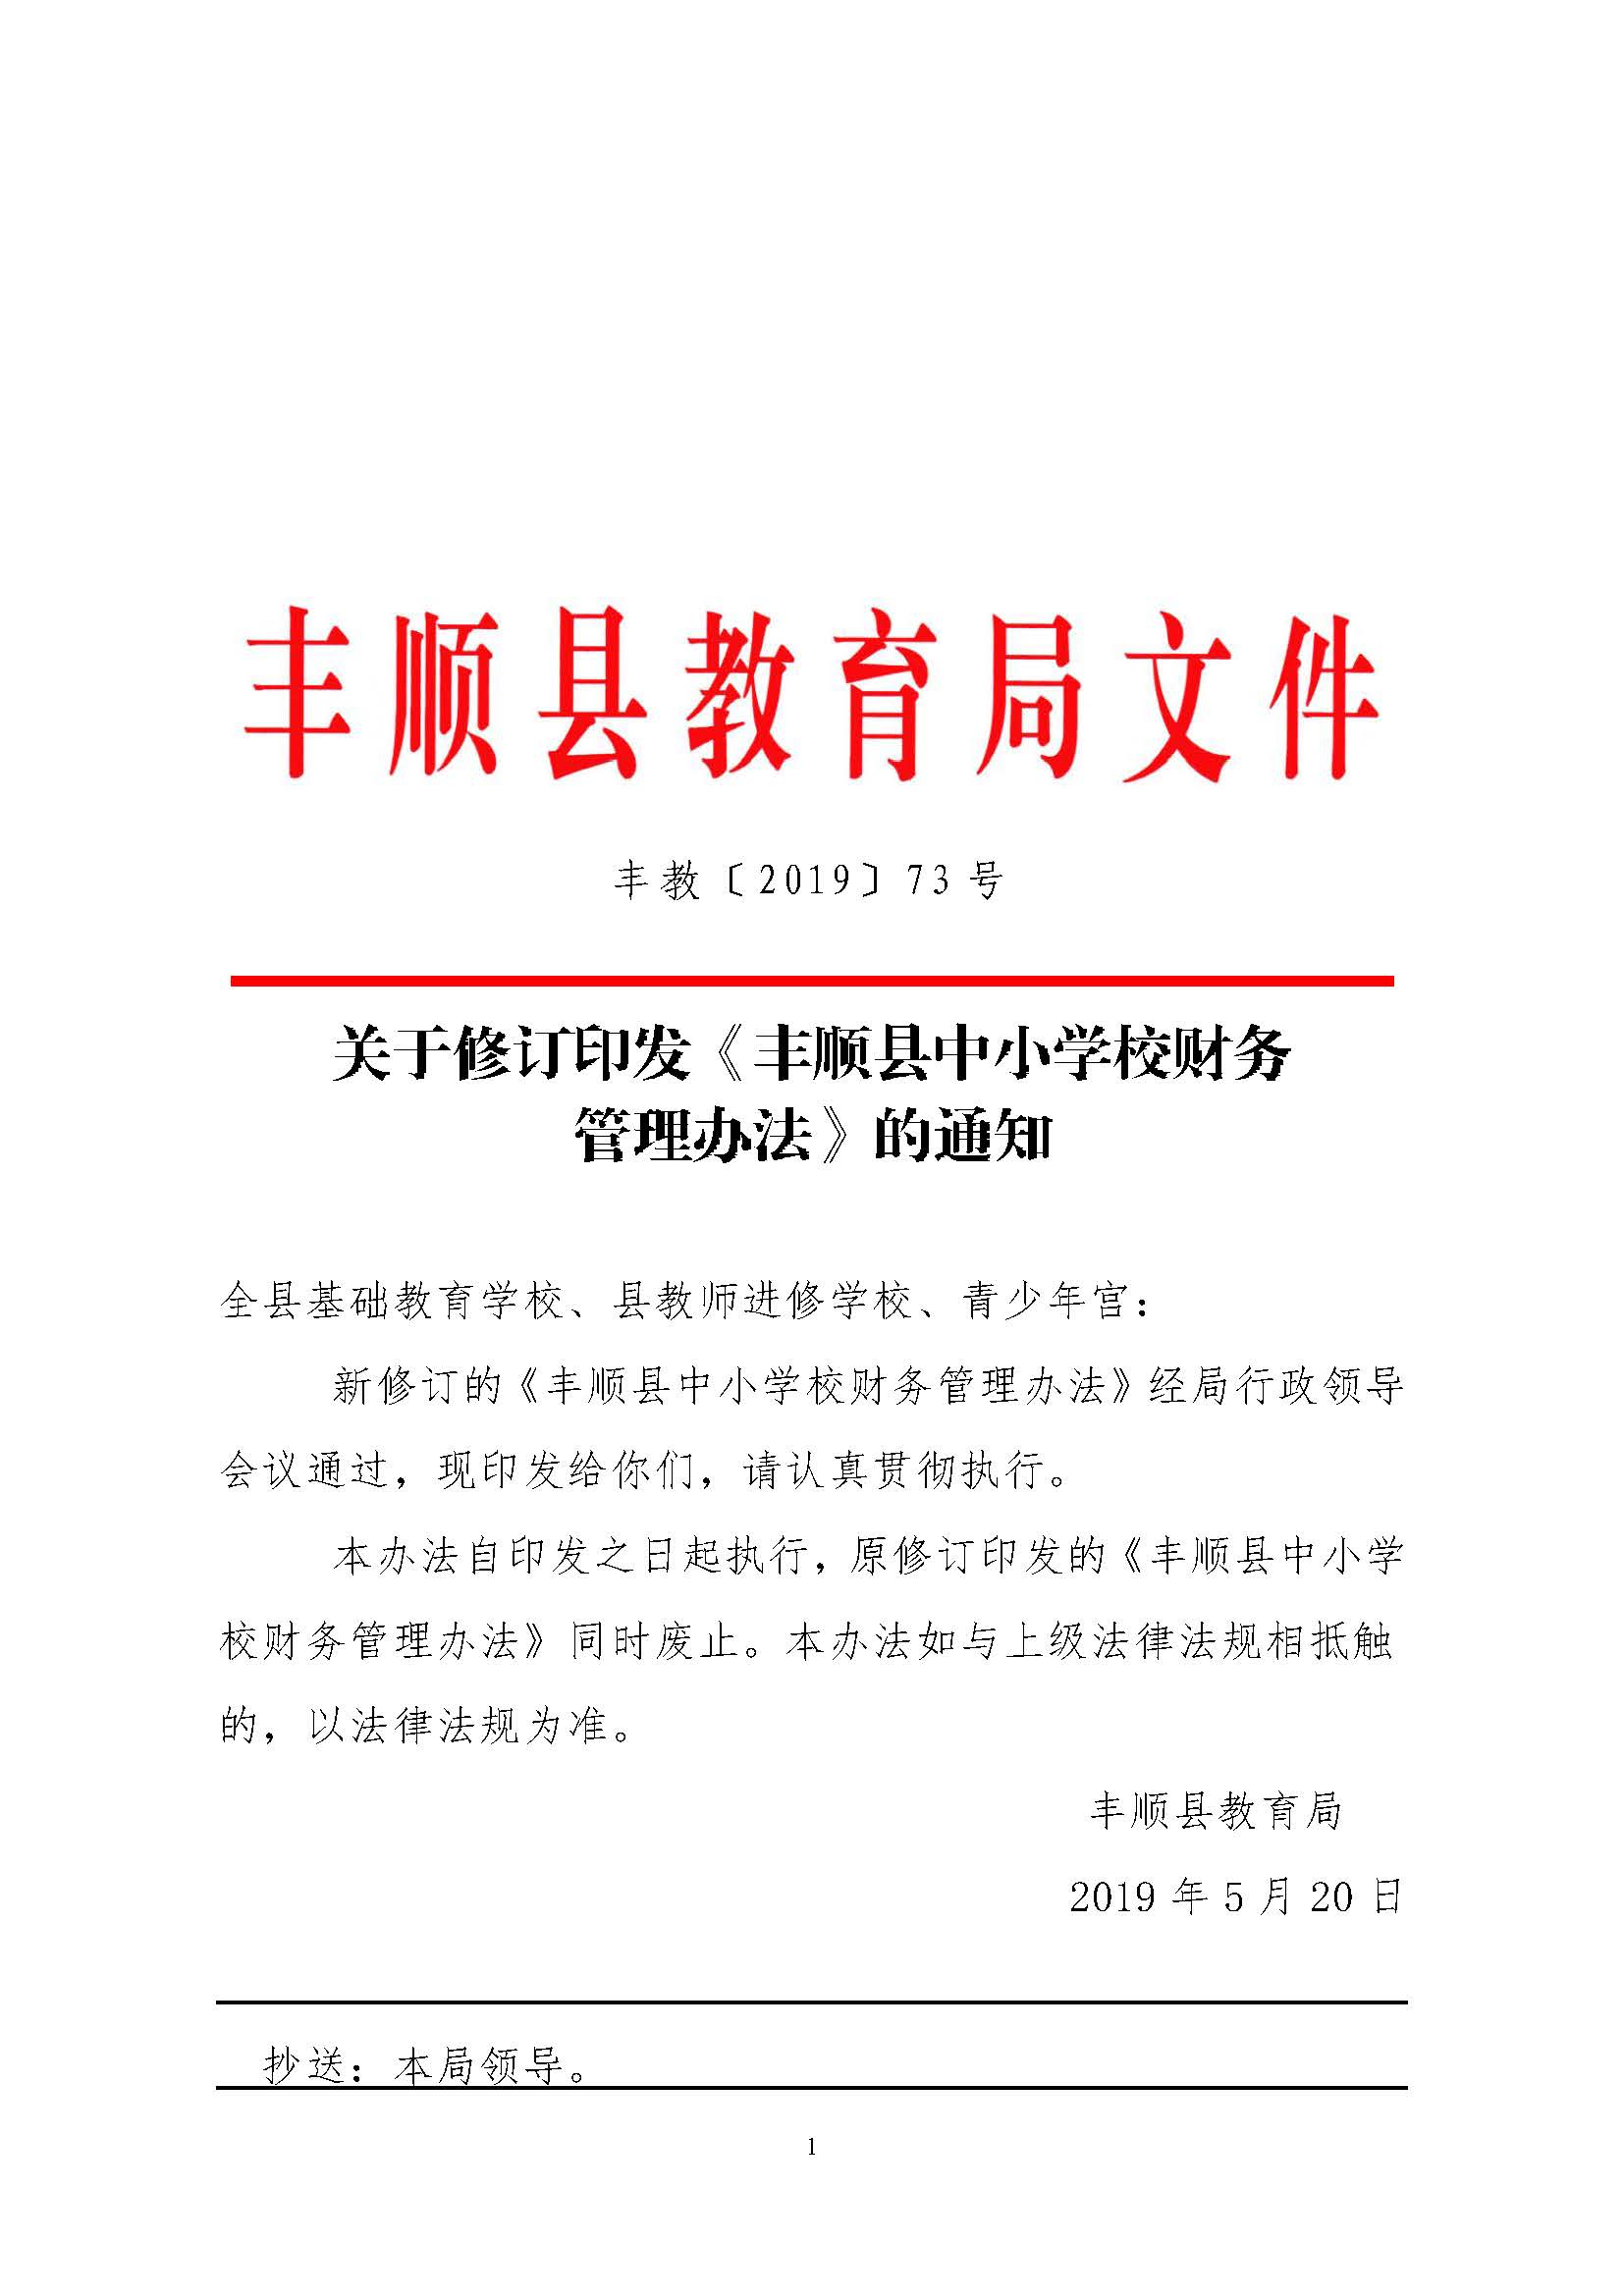 关于修订印发《丰顺县中小学校财务管理办法》的通知